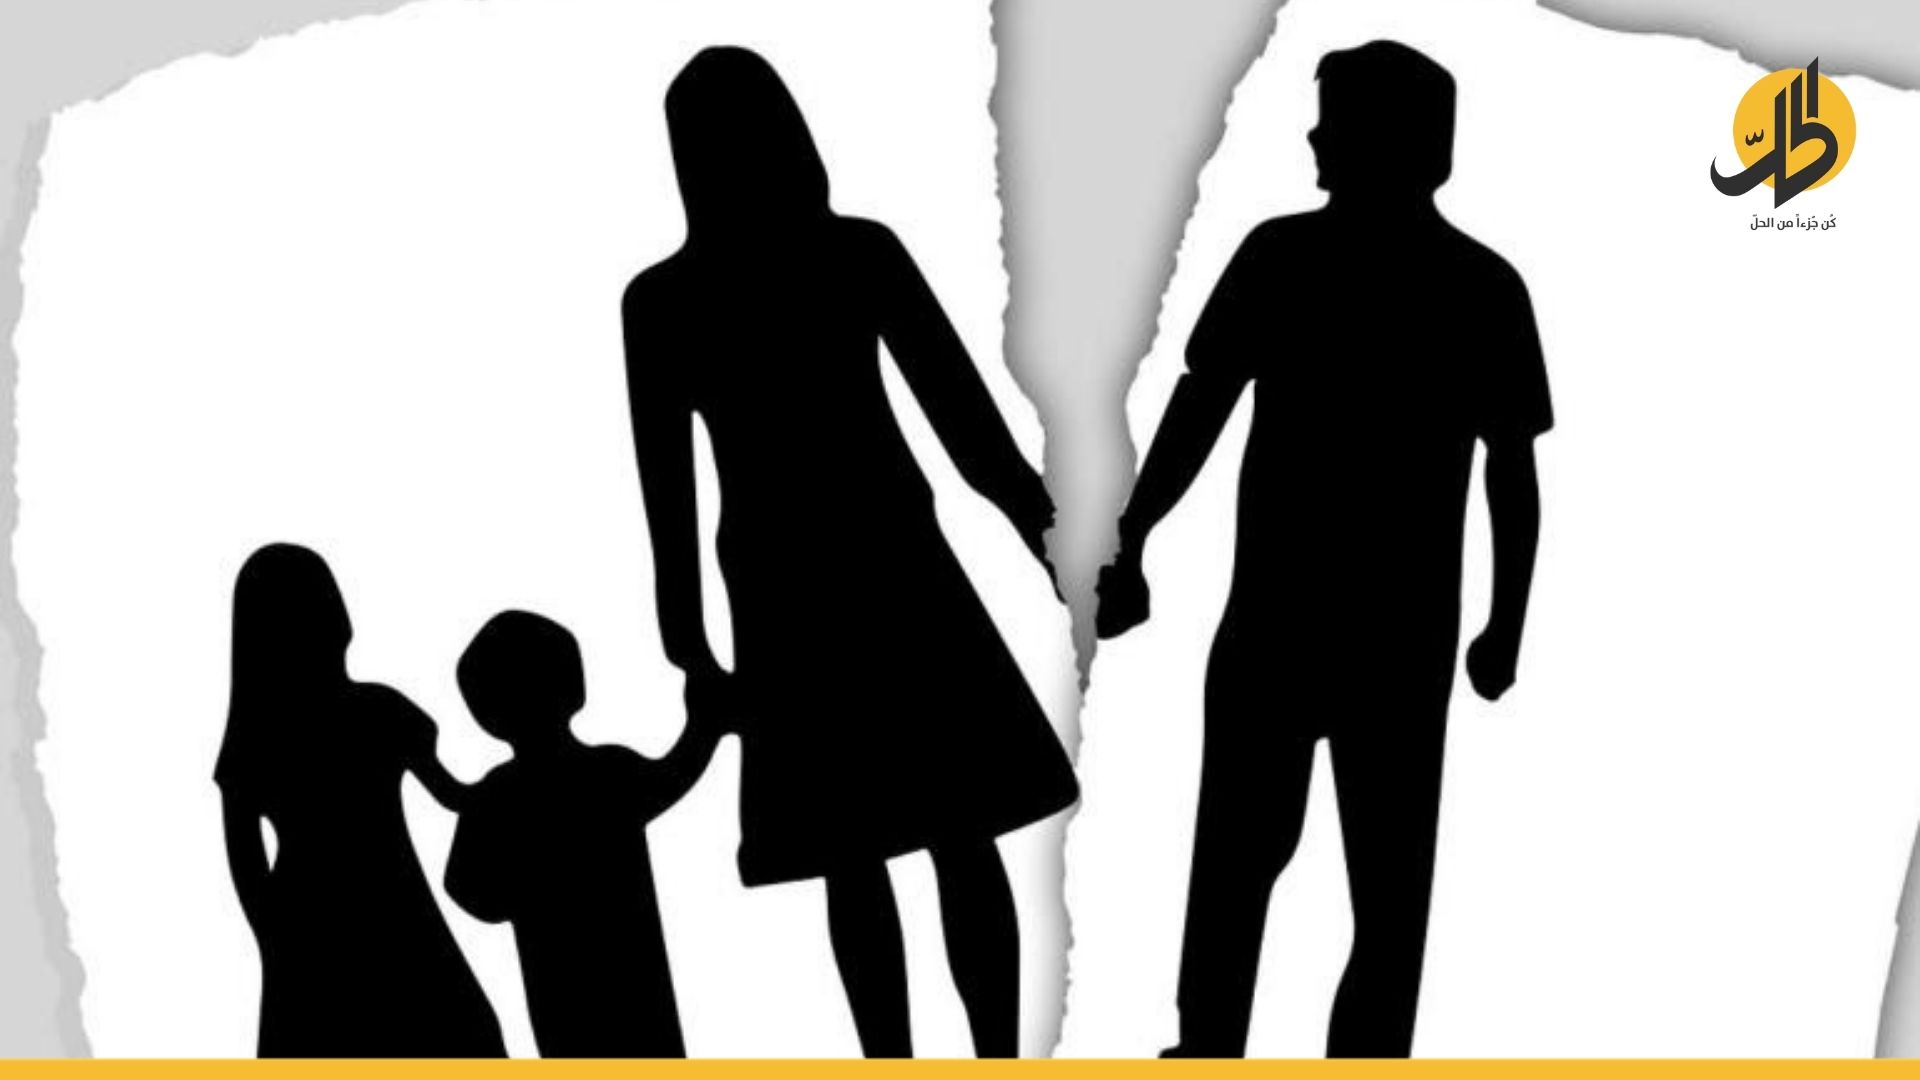 الطلاق في العراق: 9 حالات بالساعة الواحدة، والأطفال يدفعون الثمن